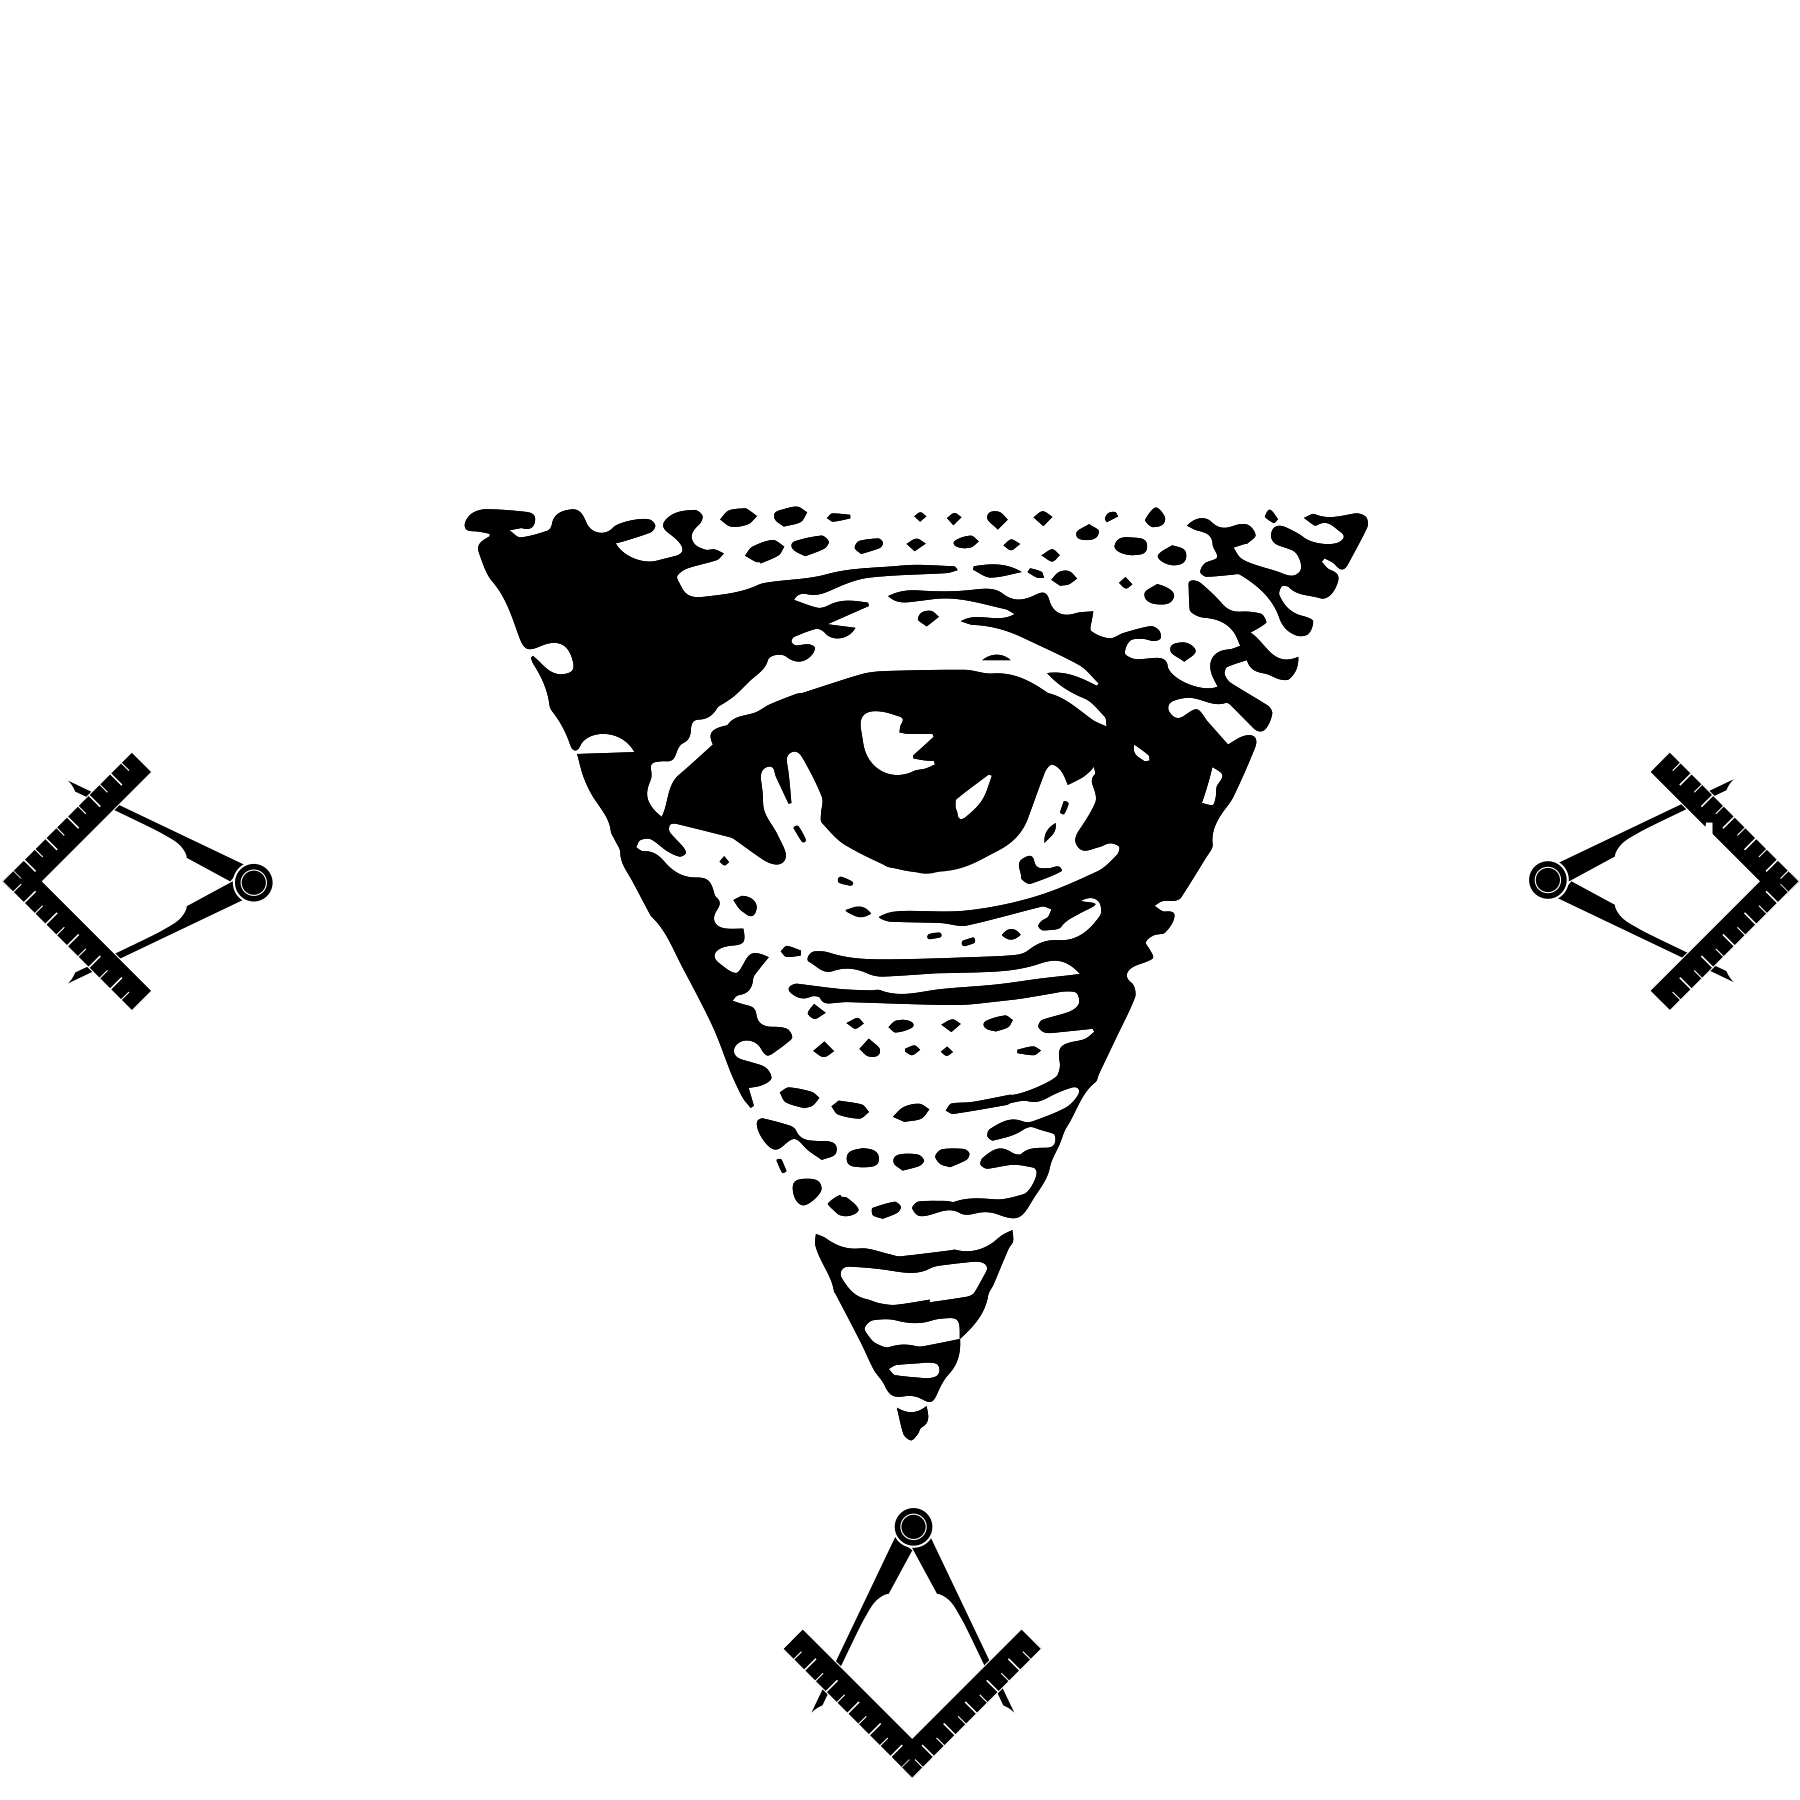 Gay Black Republican